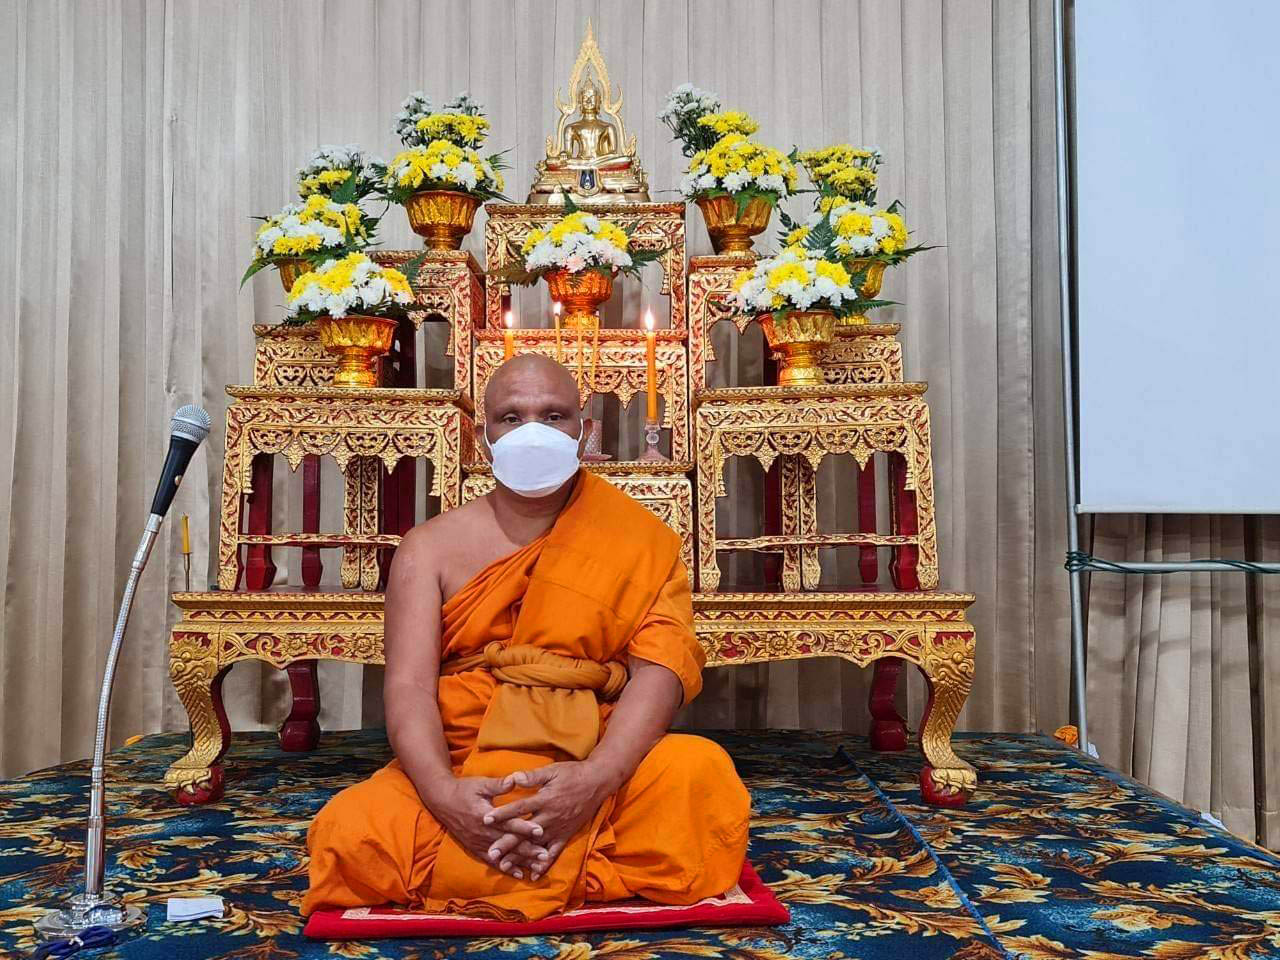 เสียงจากชายแดนใต้:คนไทยทุกศาสนาโชคดีที่สุดแล้วที่ได้เกิดบนผืนแผ่นดินไทย เพราะเปิดกว้างและให้สิทธิเสรีภาพในทุกด้าน